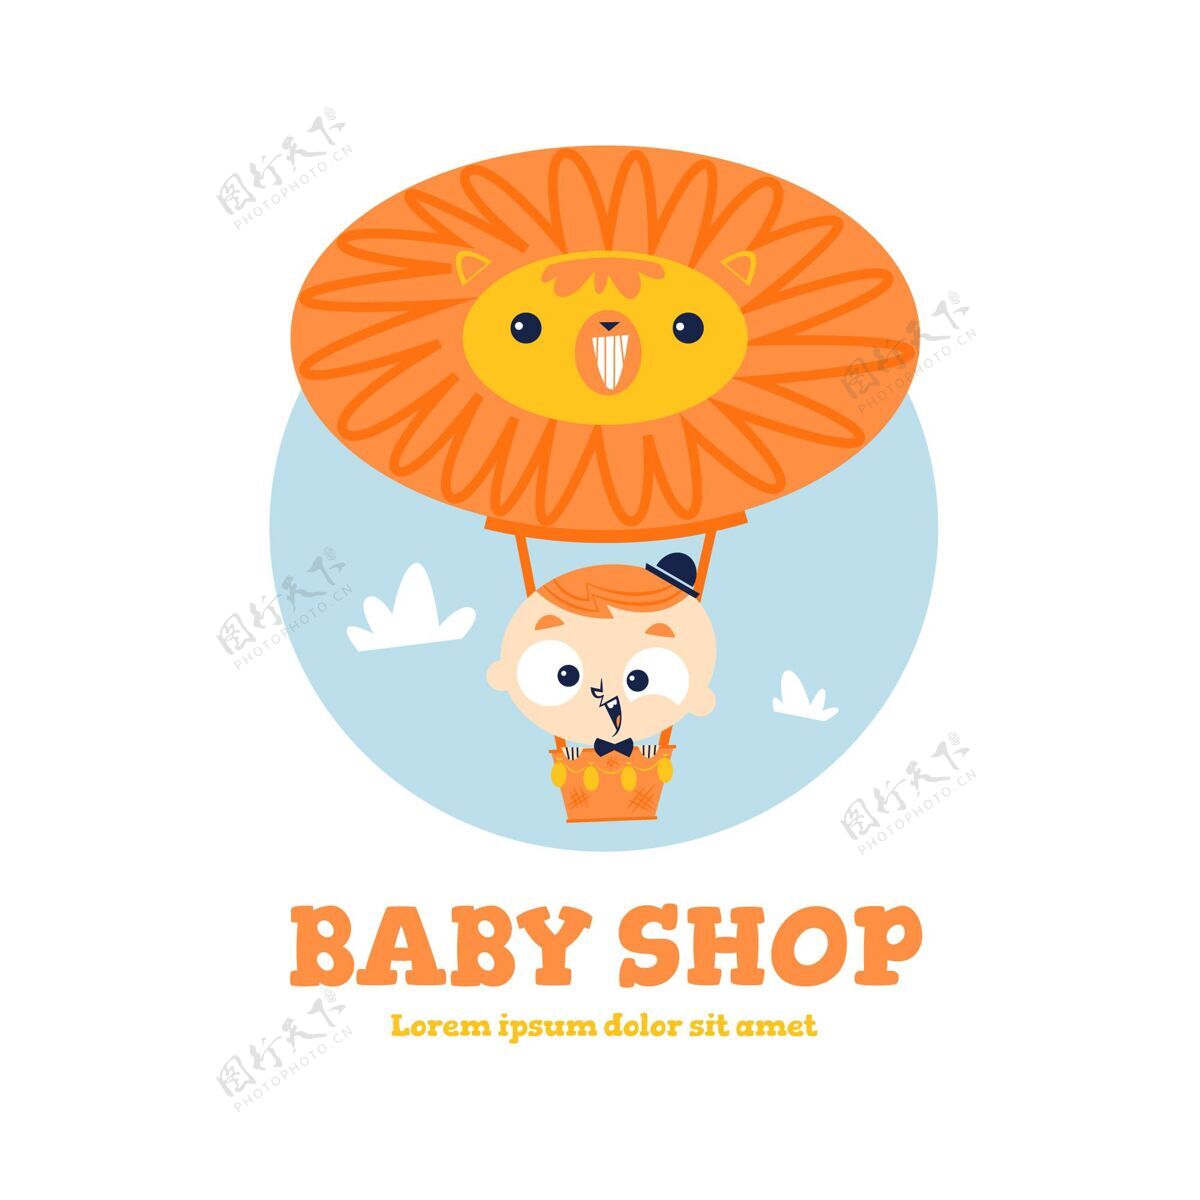 婴儿详细的婴儿标志与狮子热气球婴儿气球婴儿商店